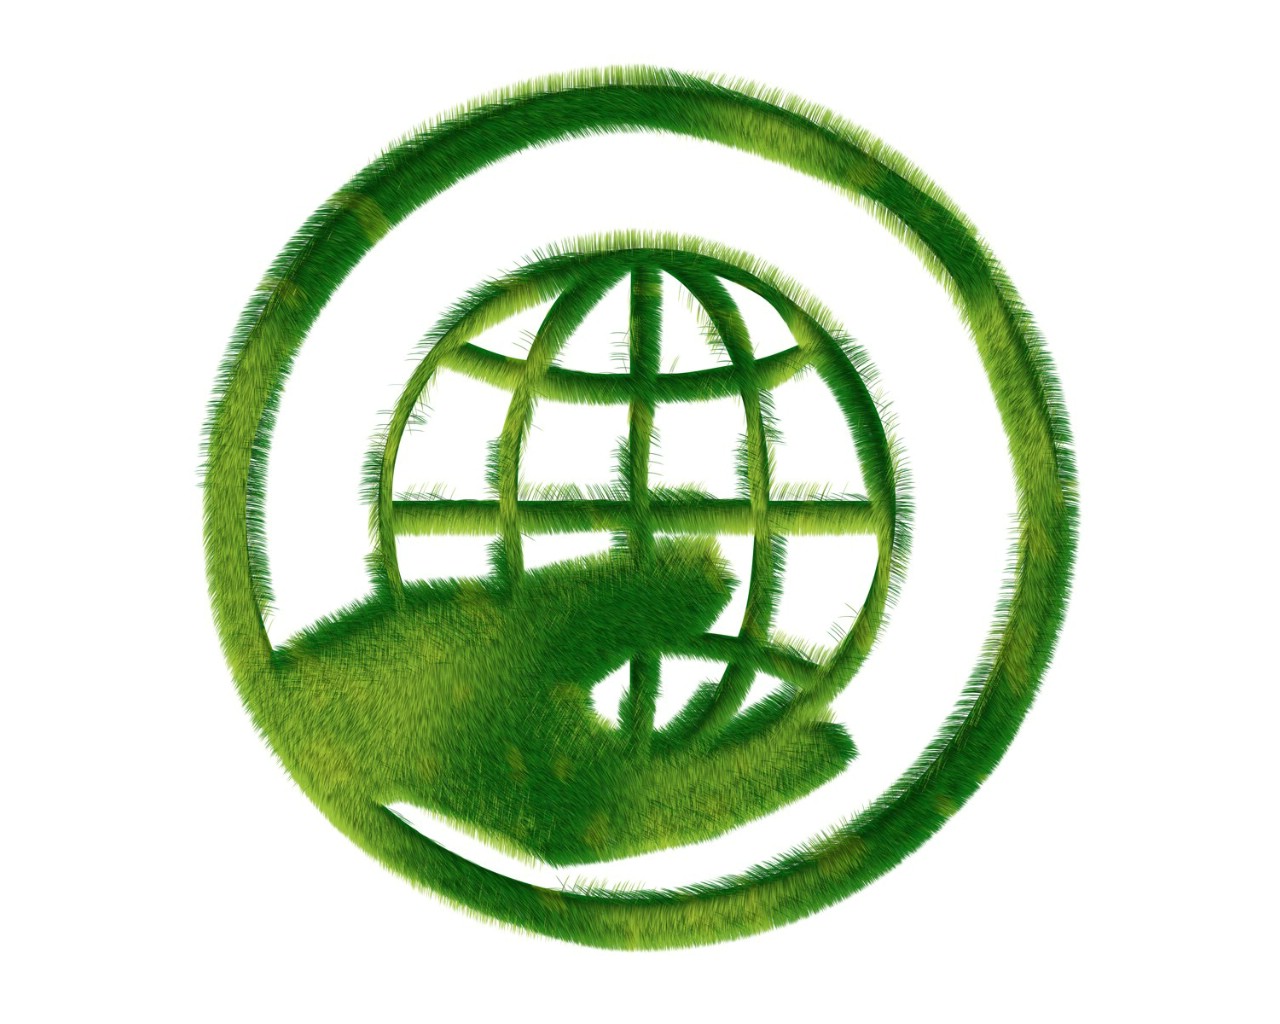 壁纸1280x1024 地球生态 草地组成的绿色环保标志图片 1920 1200壁纸 绿色和平环保标志-循环利用壁纸 绿色和平环保标志-循环利用图片 绿色和平环保标志-循环利用素材 插画壁纸 插画图库 插画图片素材桌面壁纸